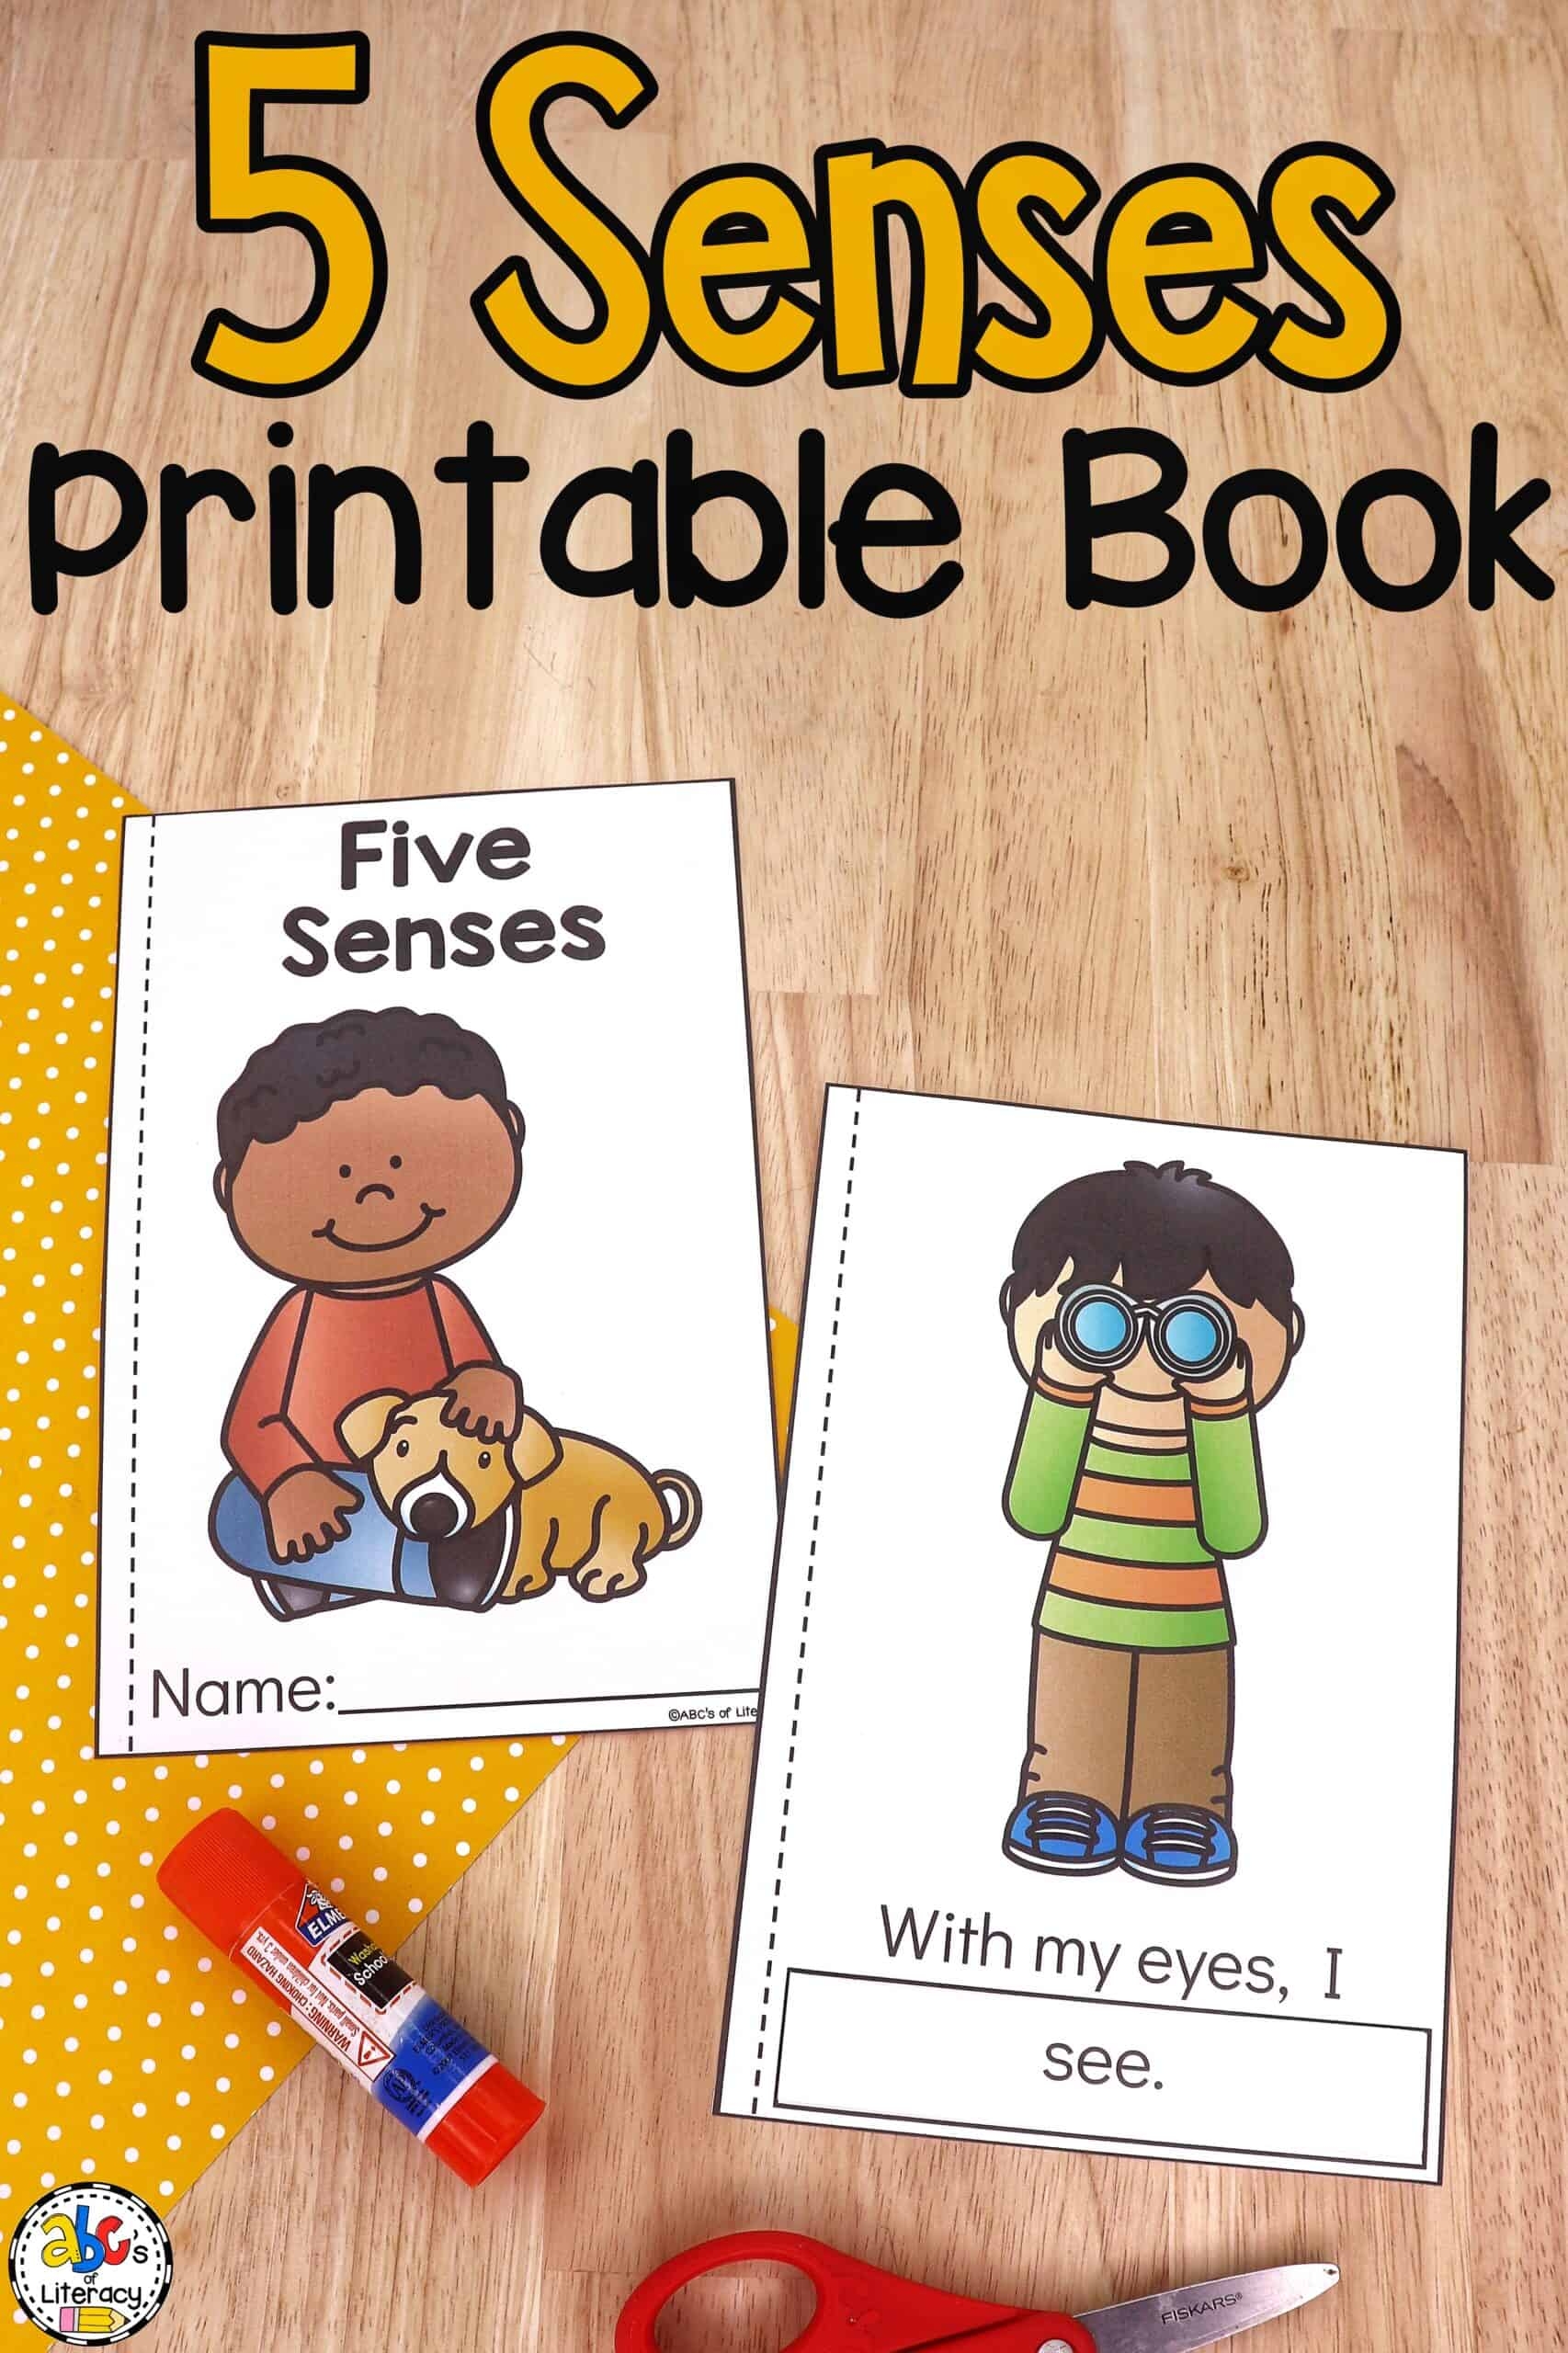 5 Senses Printable Book For Beginning Readers - Free Printable Books For Kindergarten